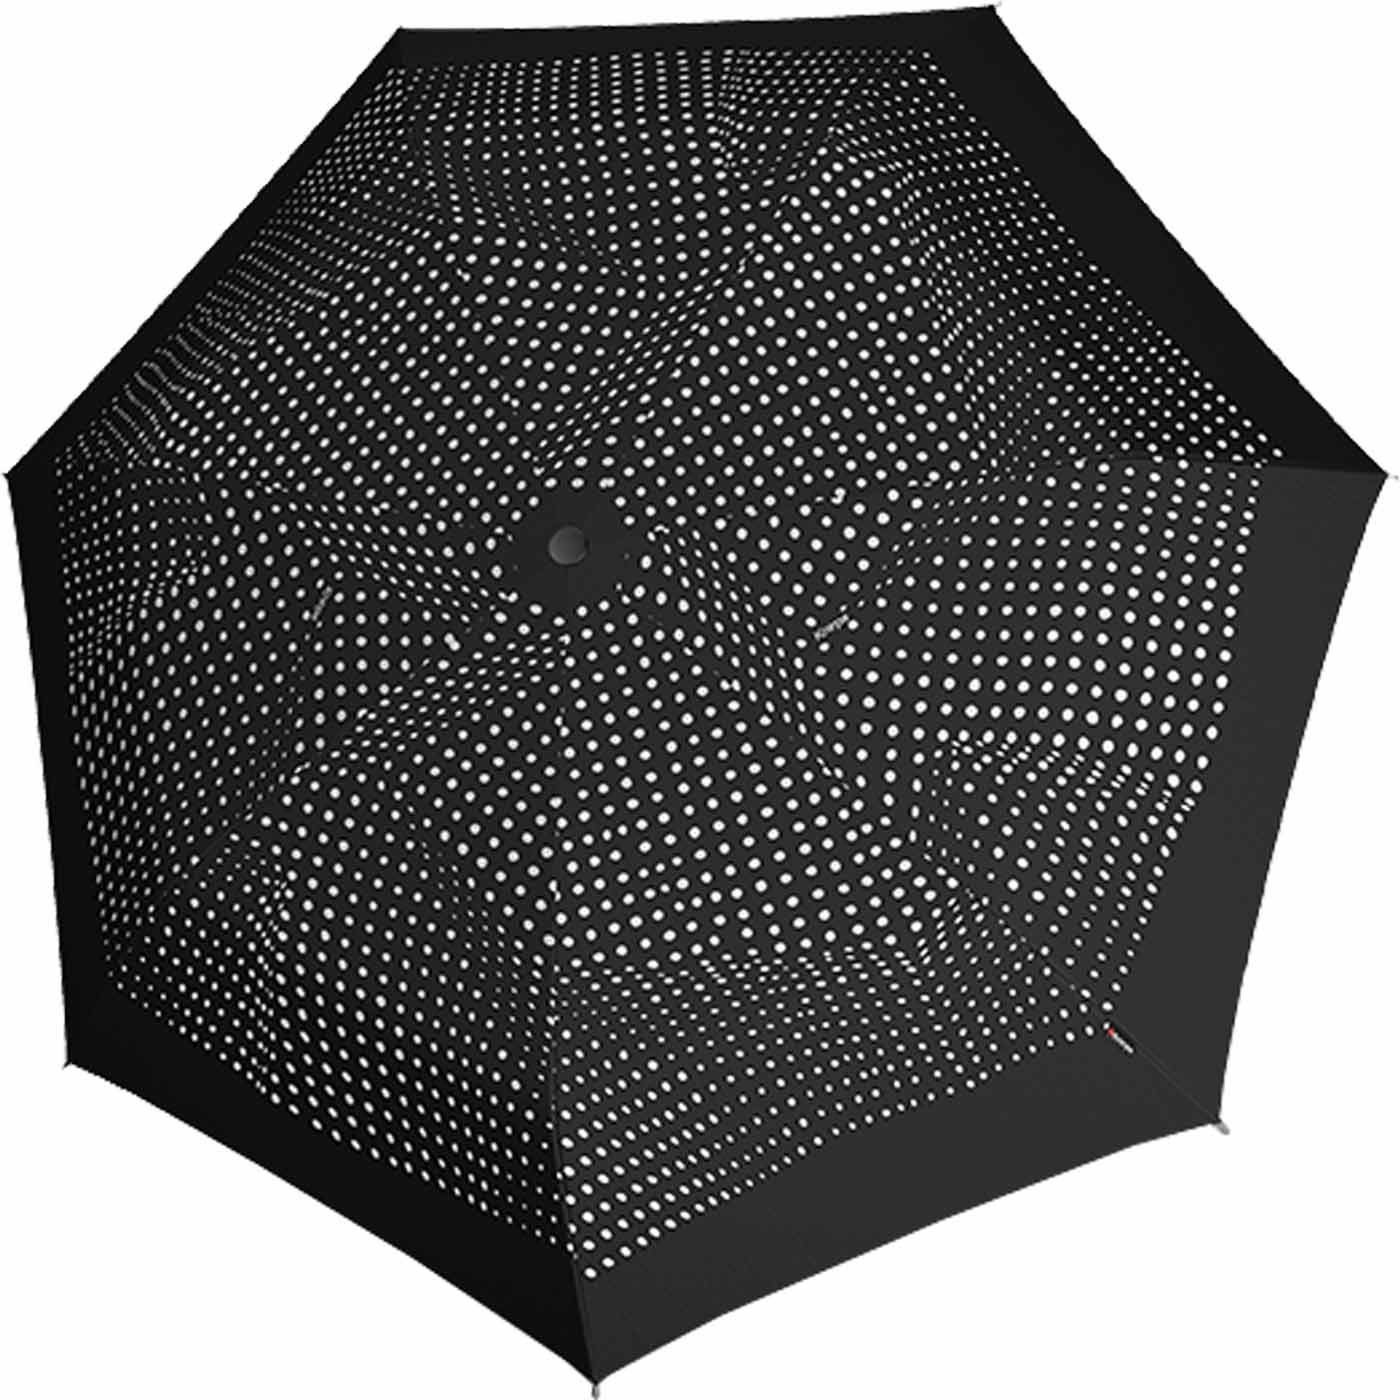 und kompakter für leicht, guter Knirps® sehr Taschenregenschirm Schirm Notfallschirm ein besonders leichter, schwarz-weiß klein Damen,